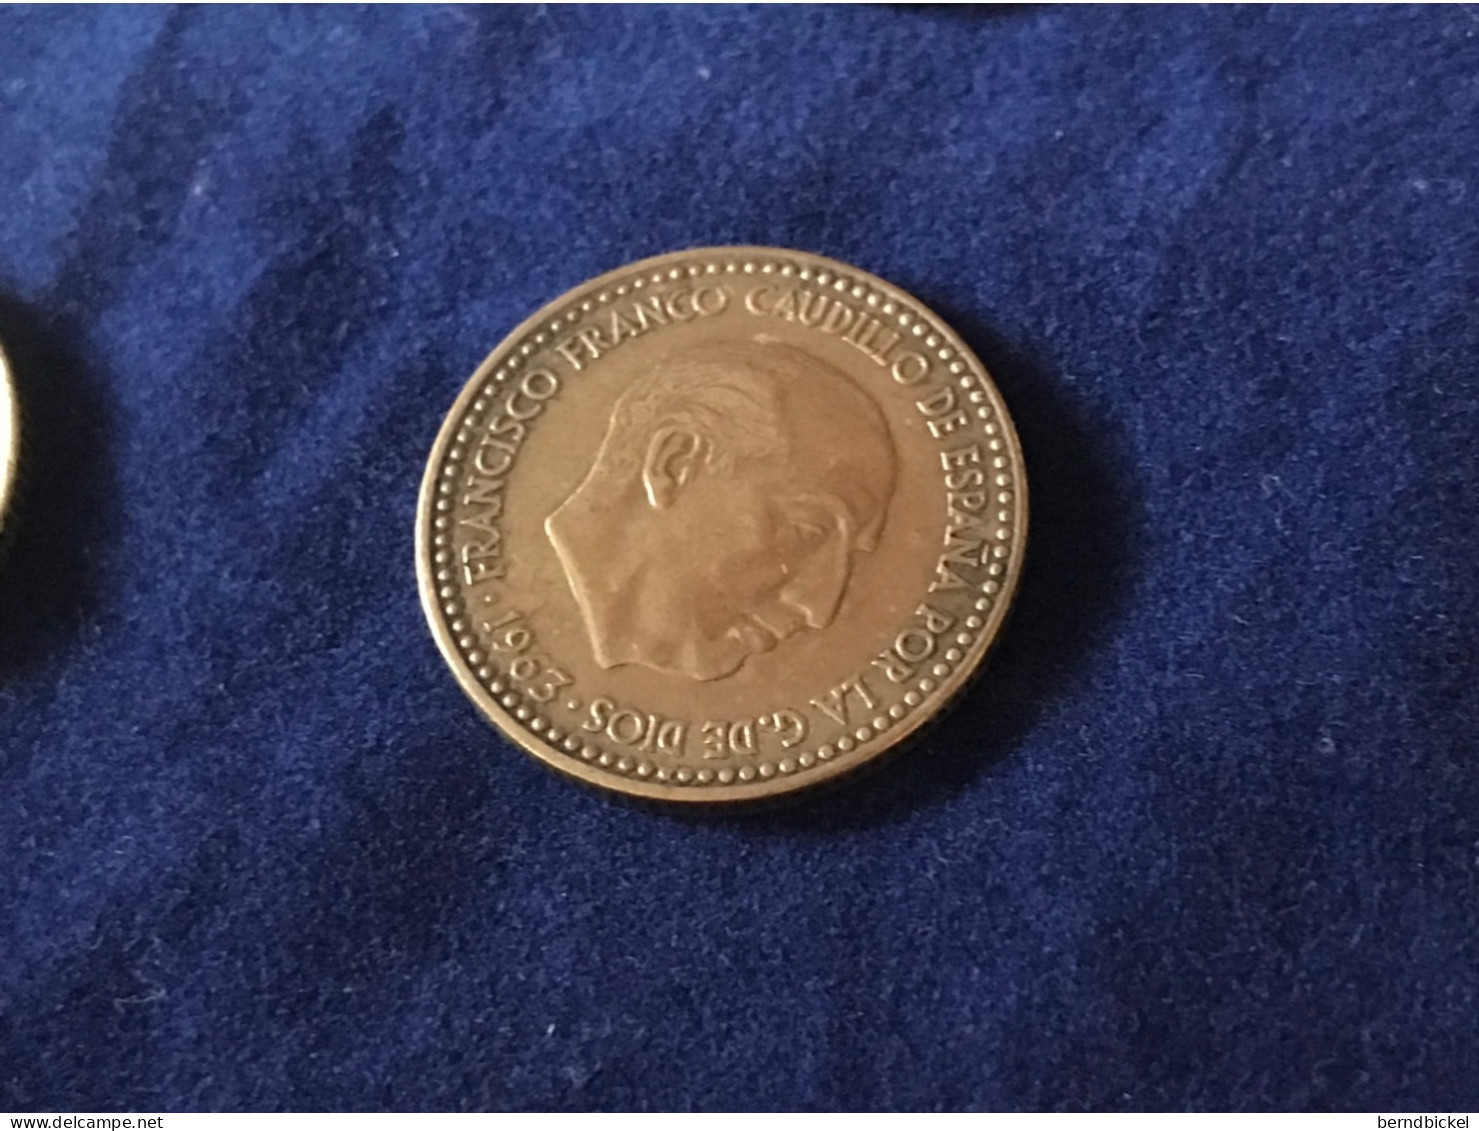 Münze Münzen Umlaufmünze Spanien 1 Peseta 1963 Im Stern 63 - 1 Peseta